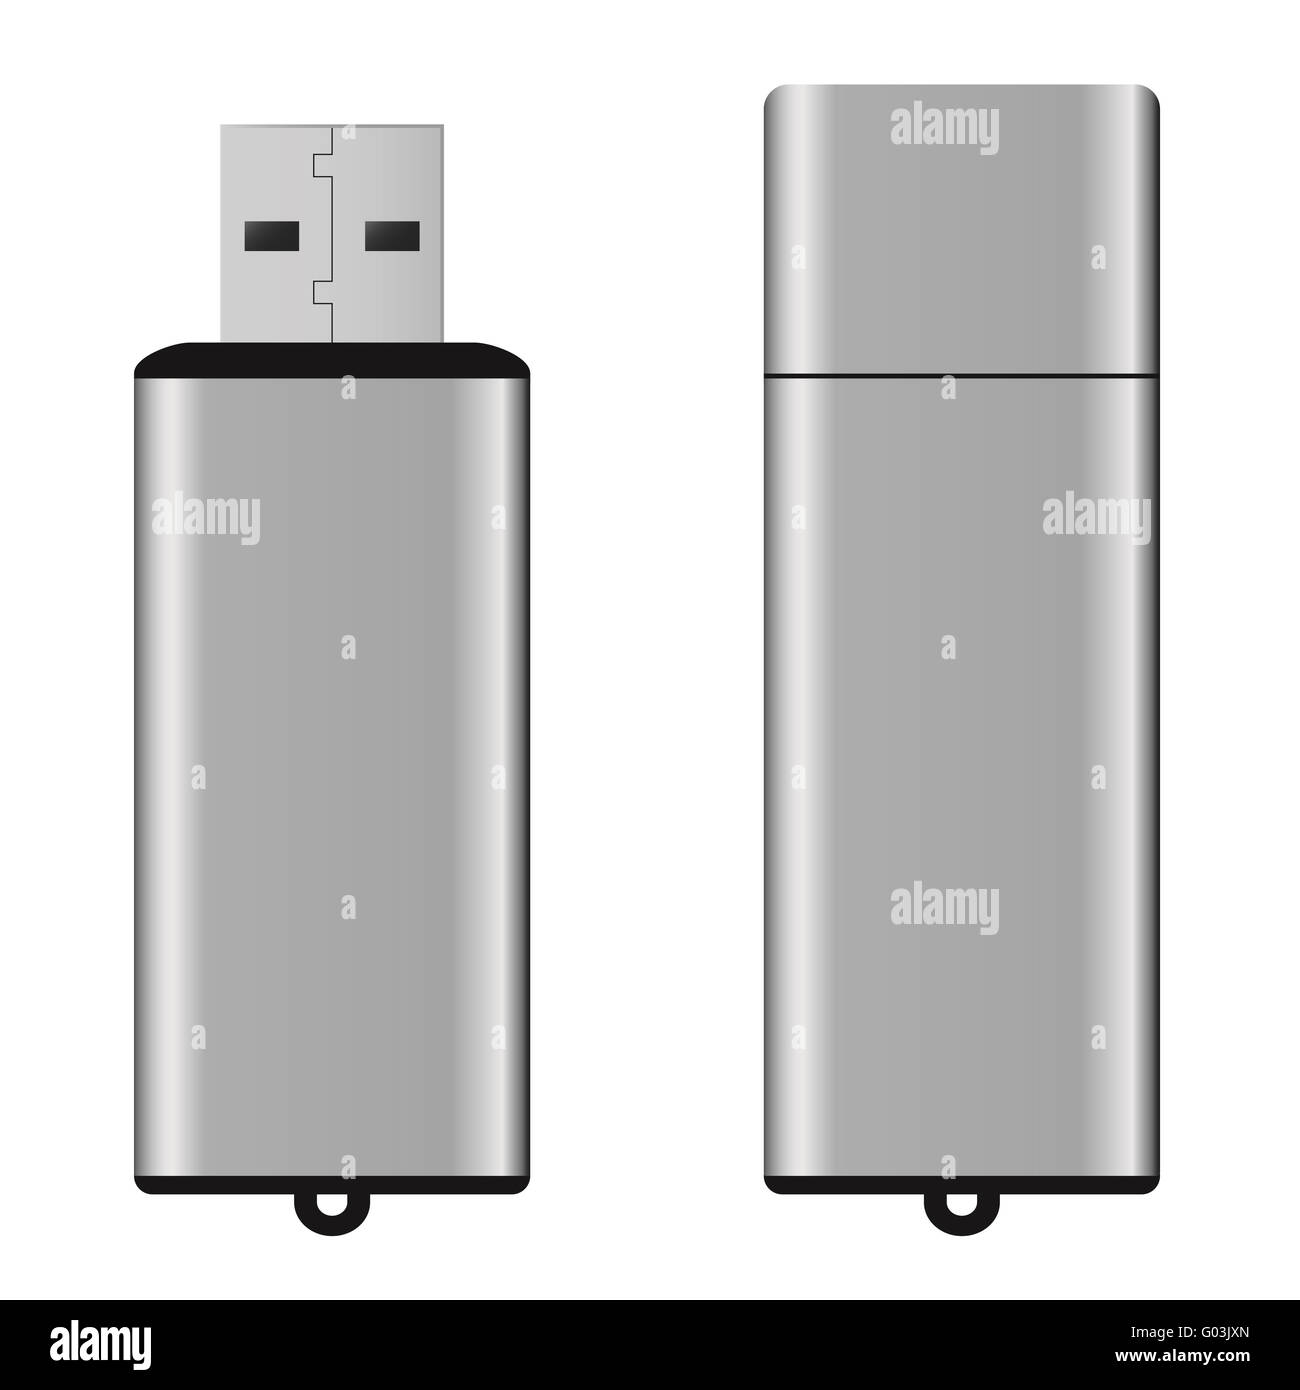 USB pen drive Stock Photo